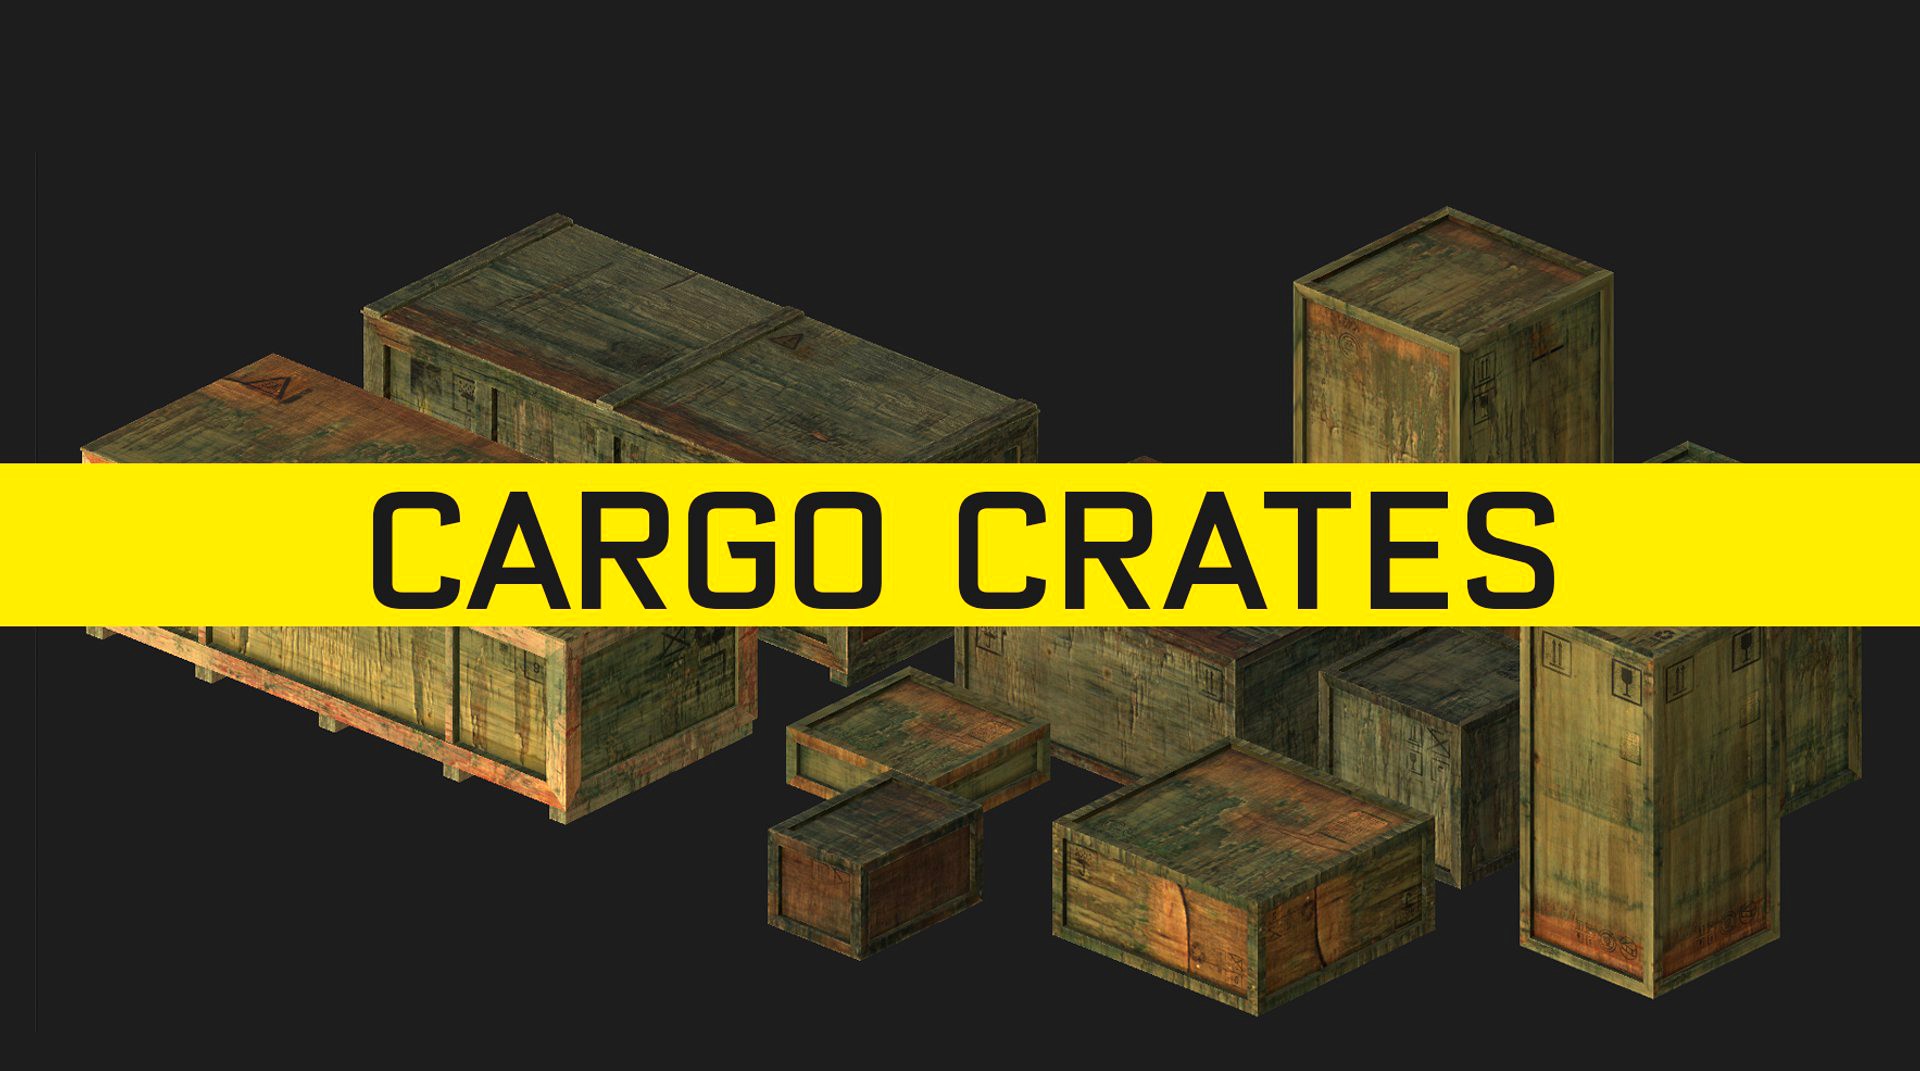 Cargo crate